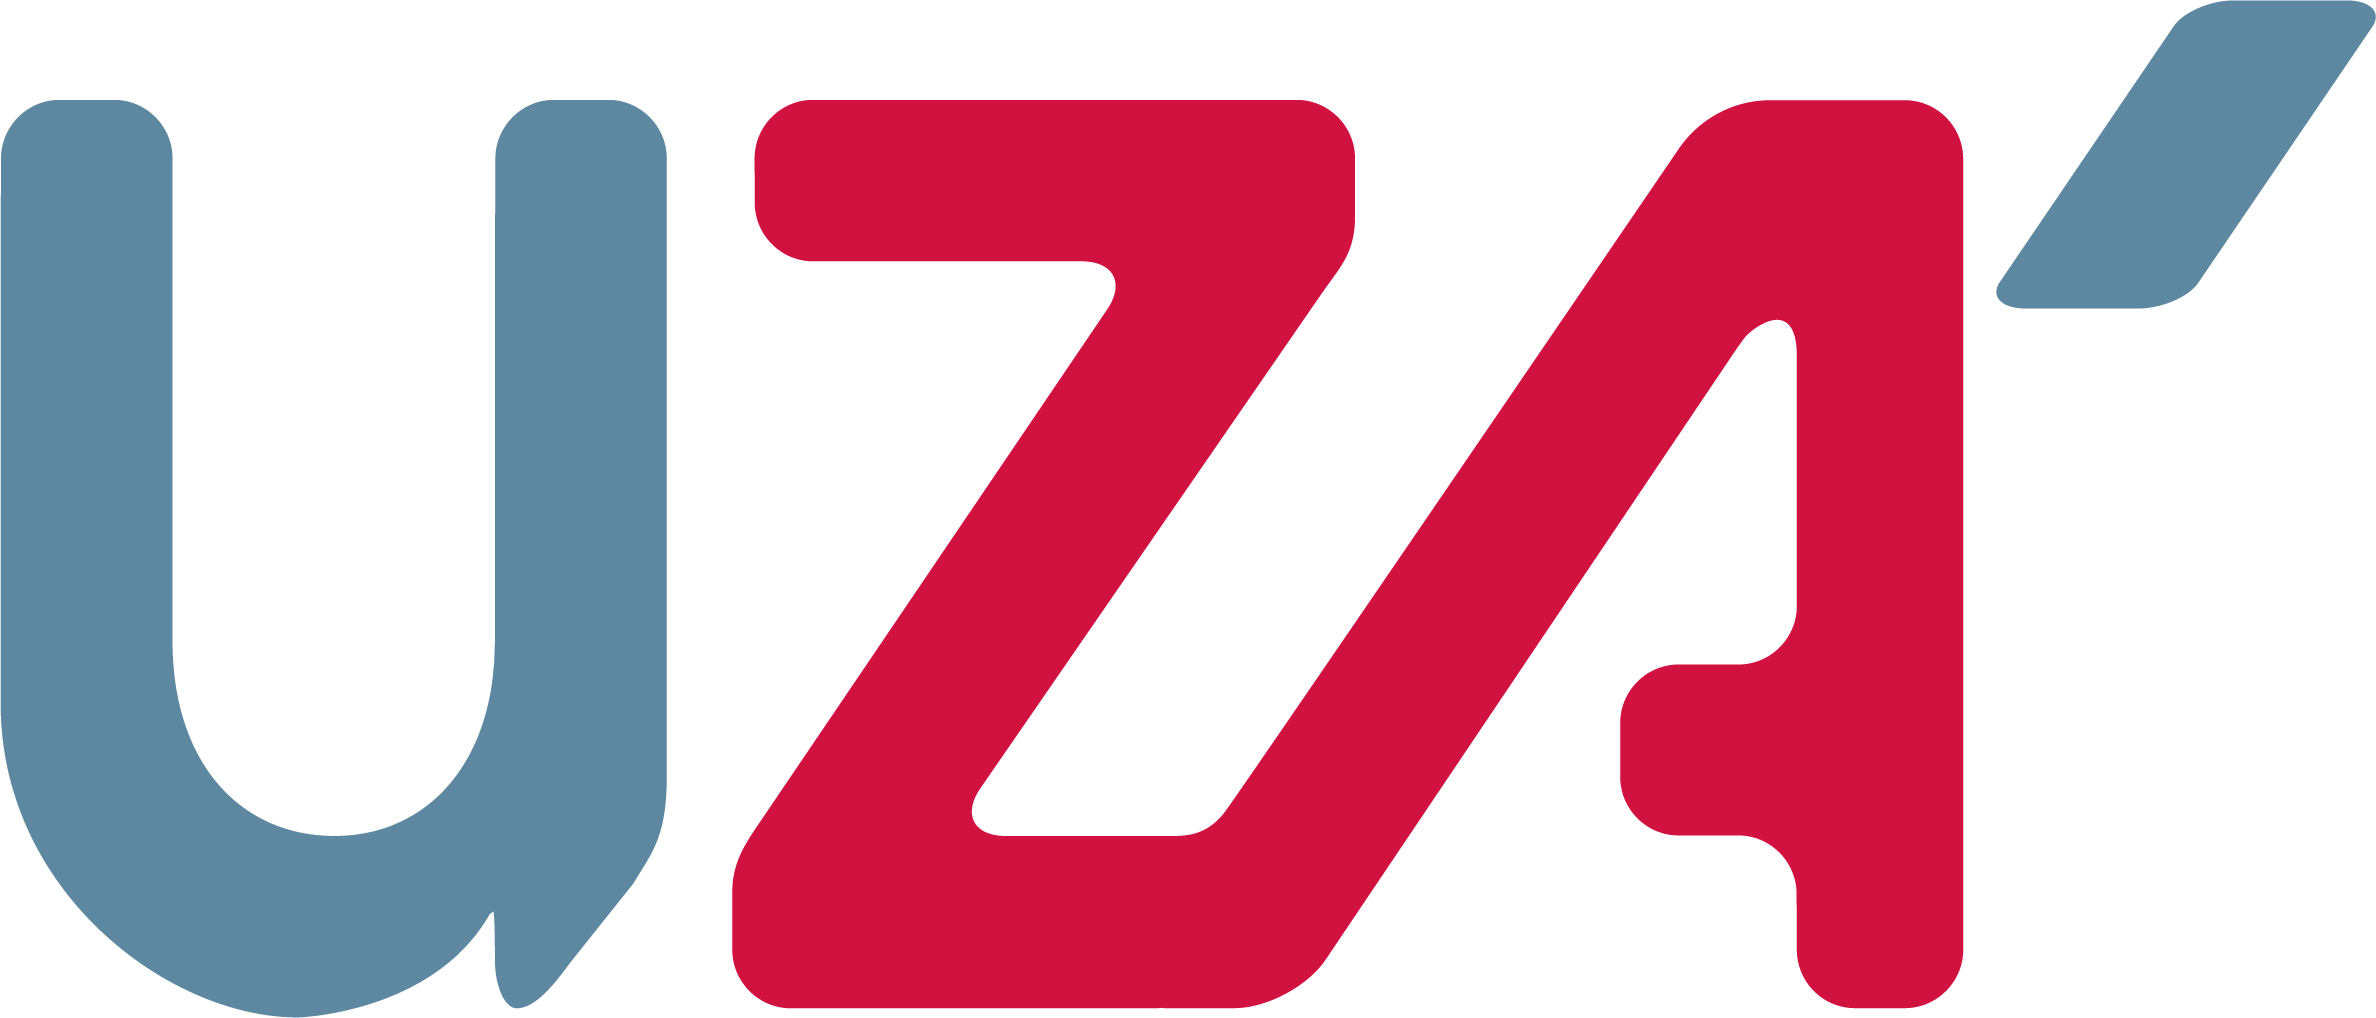 UZA_logo_POS_Quadri-groot